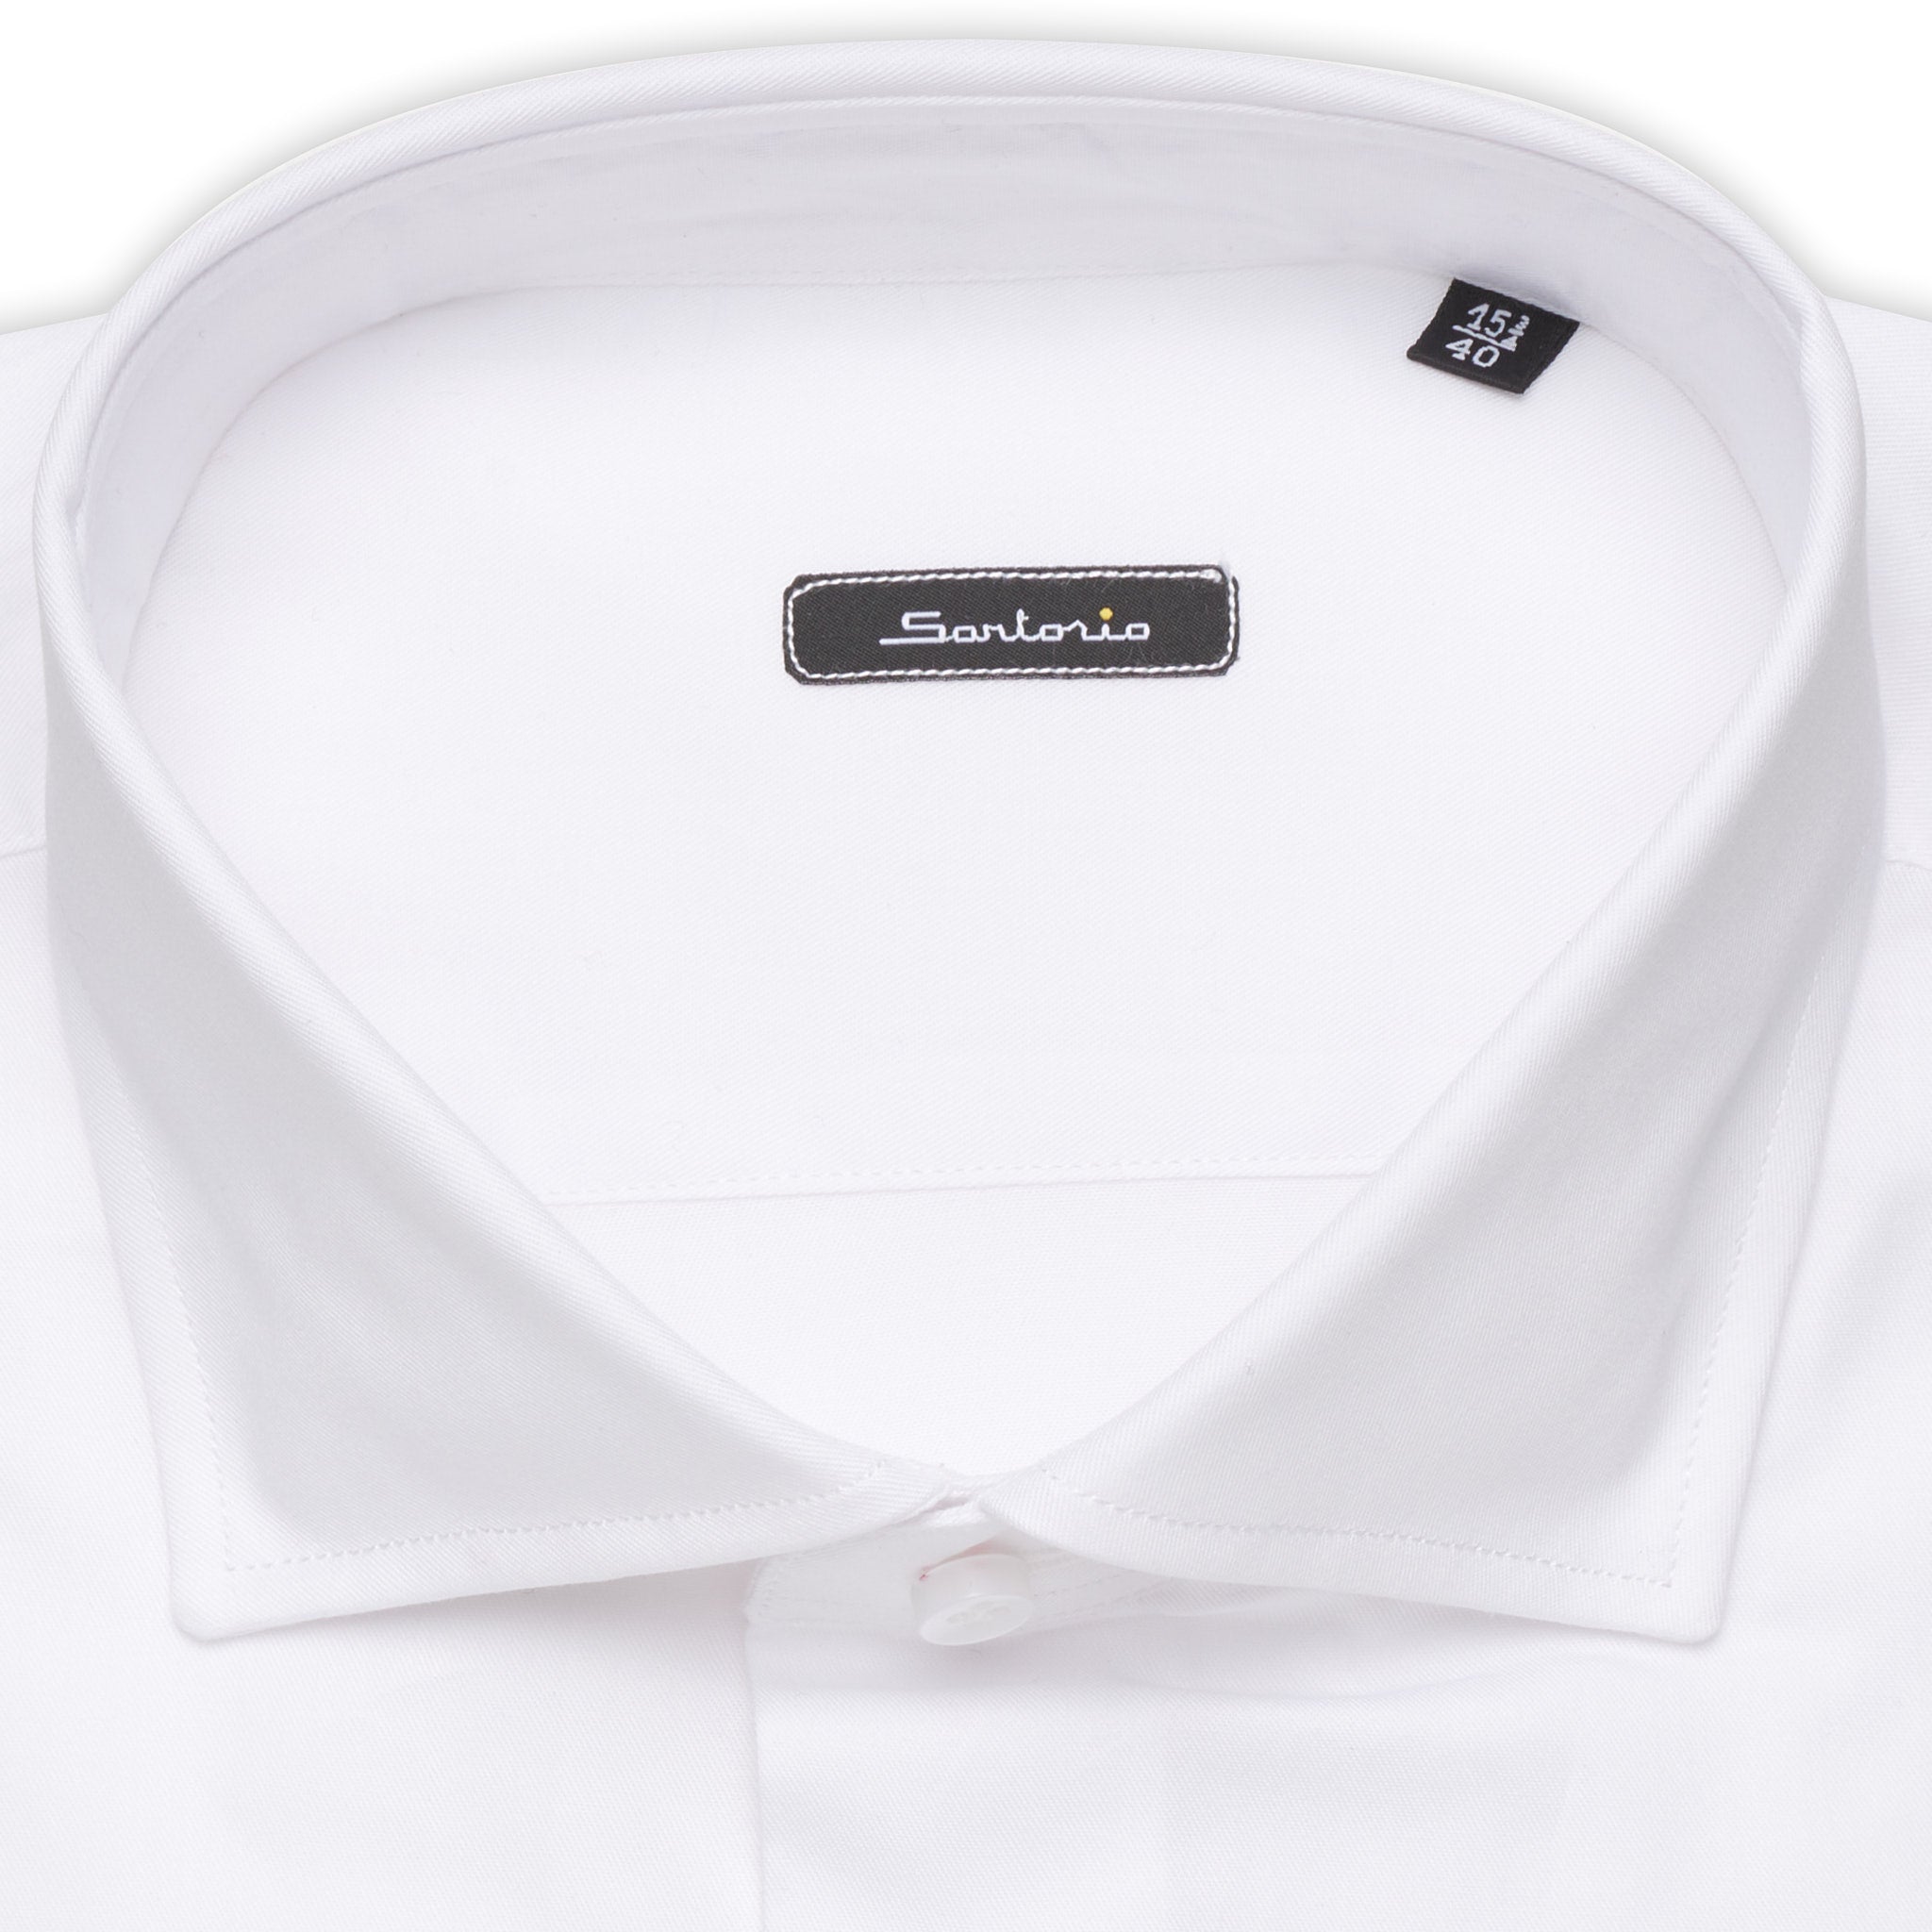 SARTORIO Napoli by KITON White Twill Cotton Dress Shirt NEW Slim Fit SARTORIO